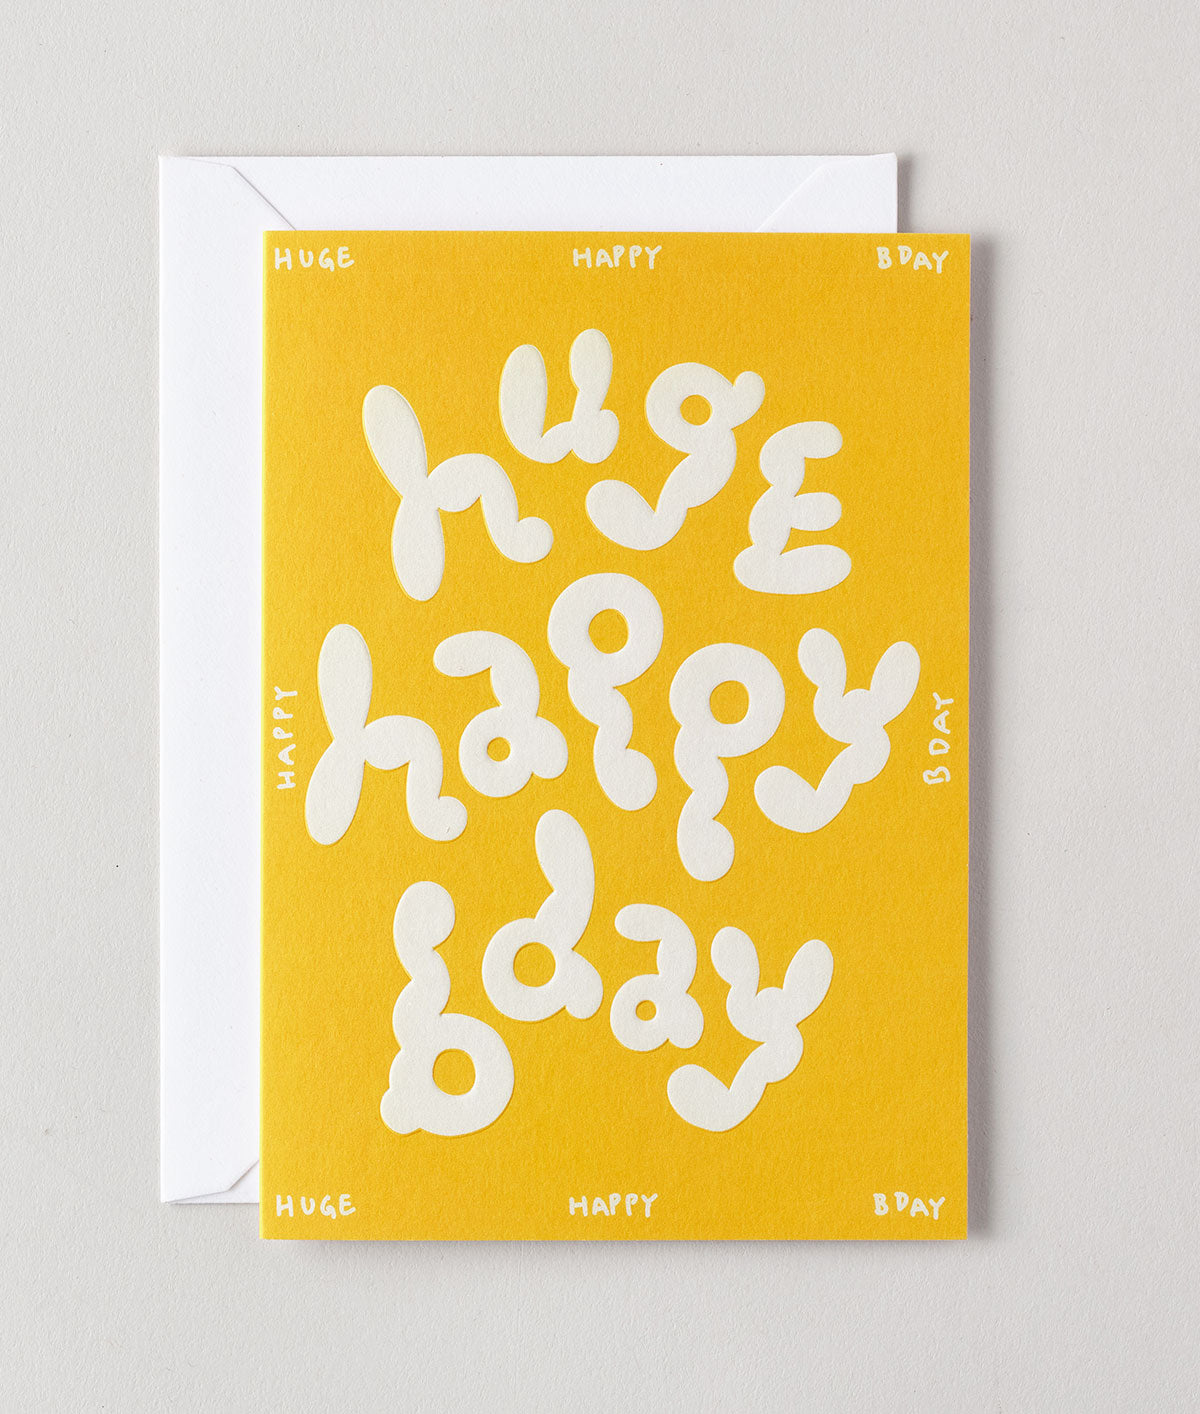 Huge Happy Bday Embossed Greetings Card